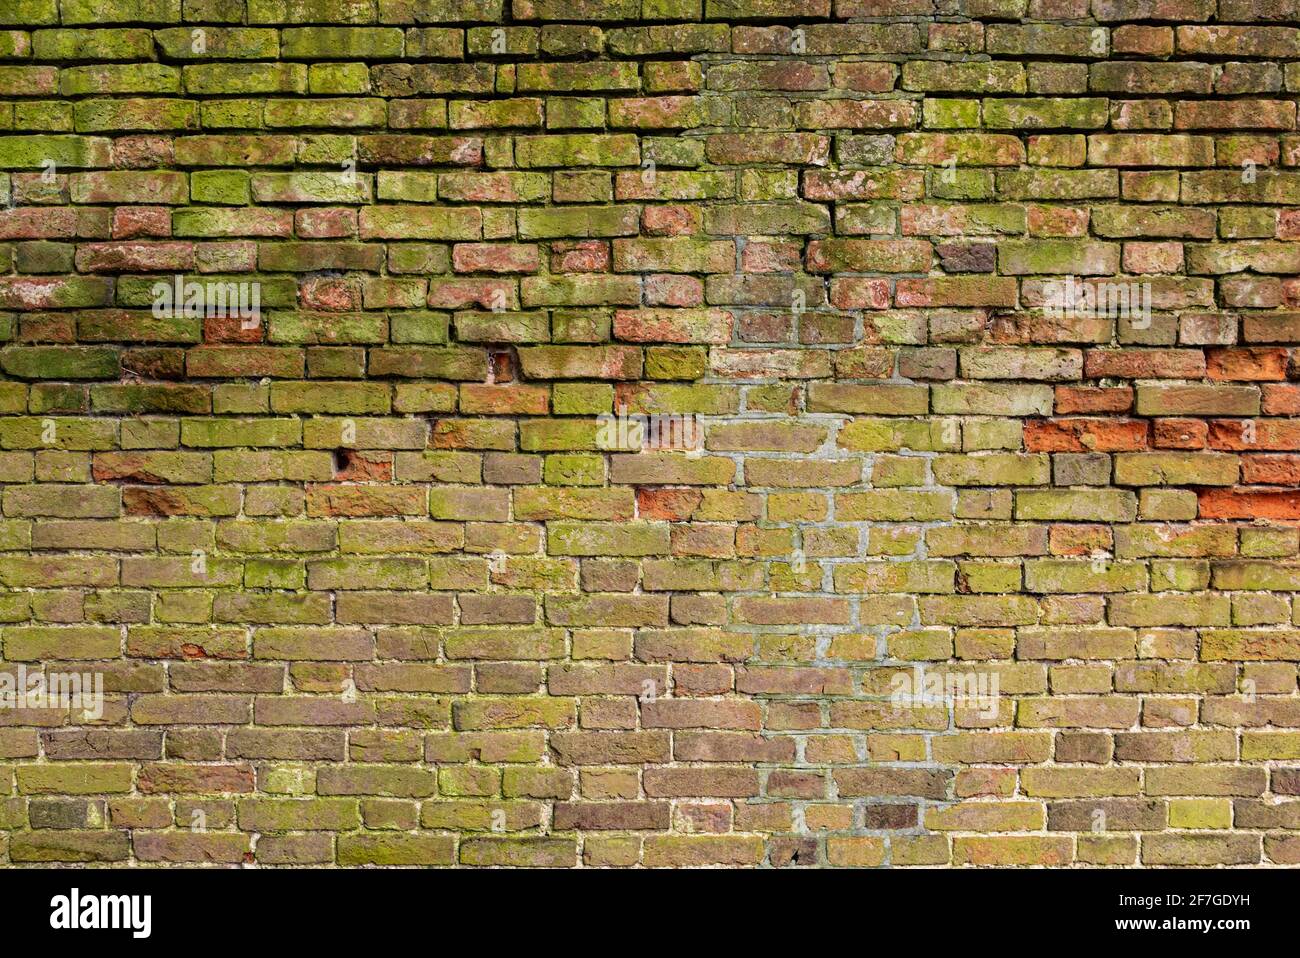 Mur de briques multicolore arrière-plan variété de briques mur de briques fait avec de vieilles briques récupérées dans un modèle régulier Banque D'Images